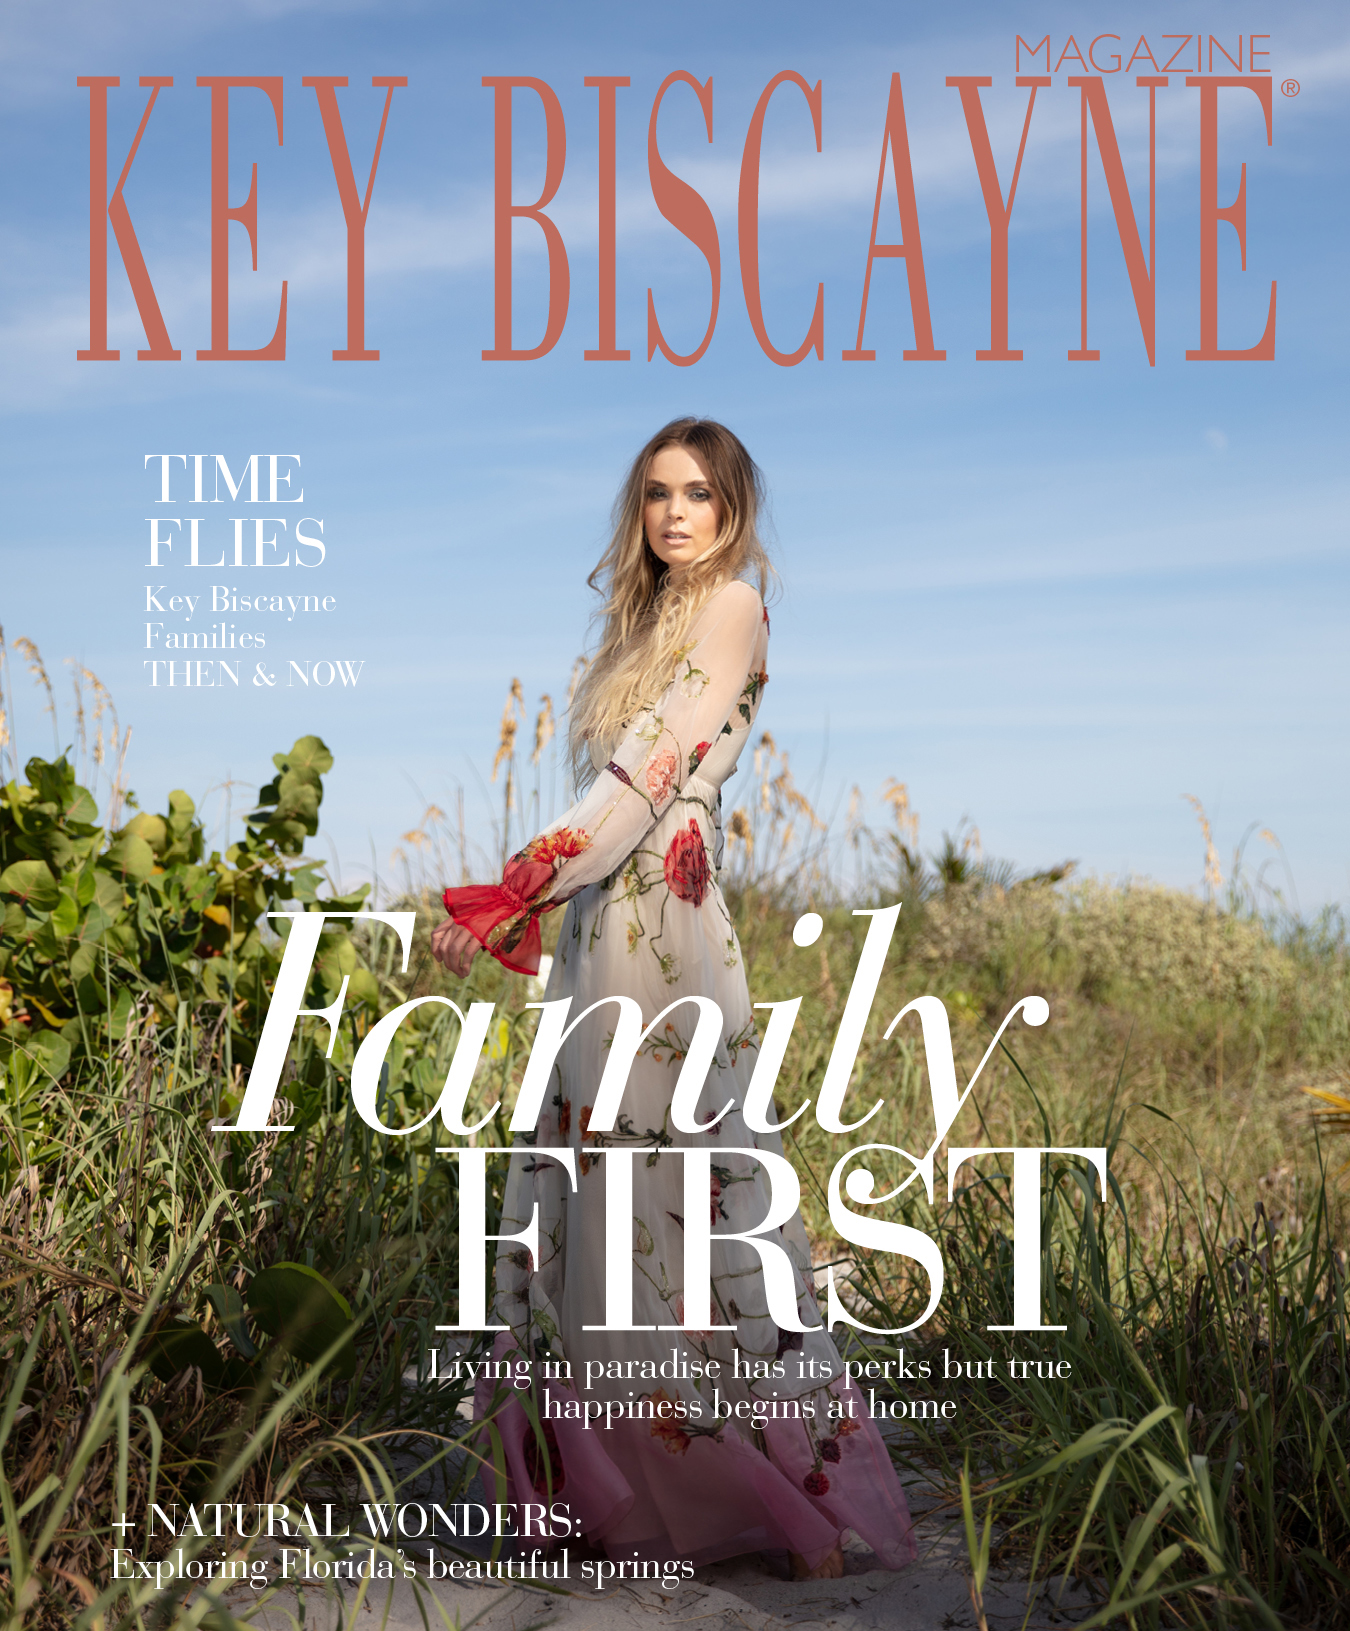 October Key Biscayne Magazine